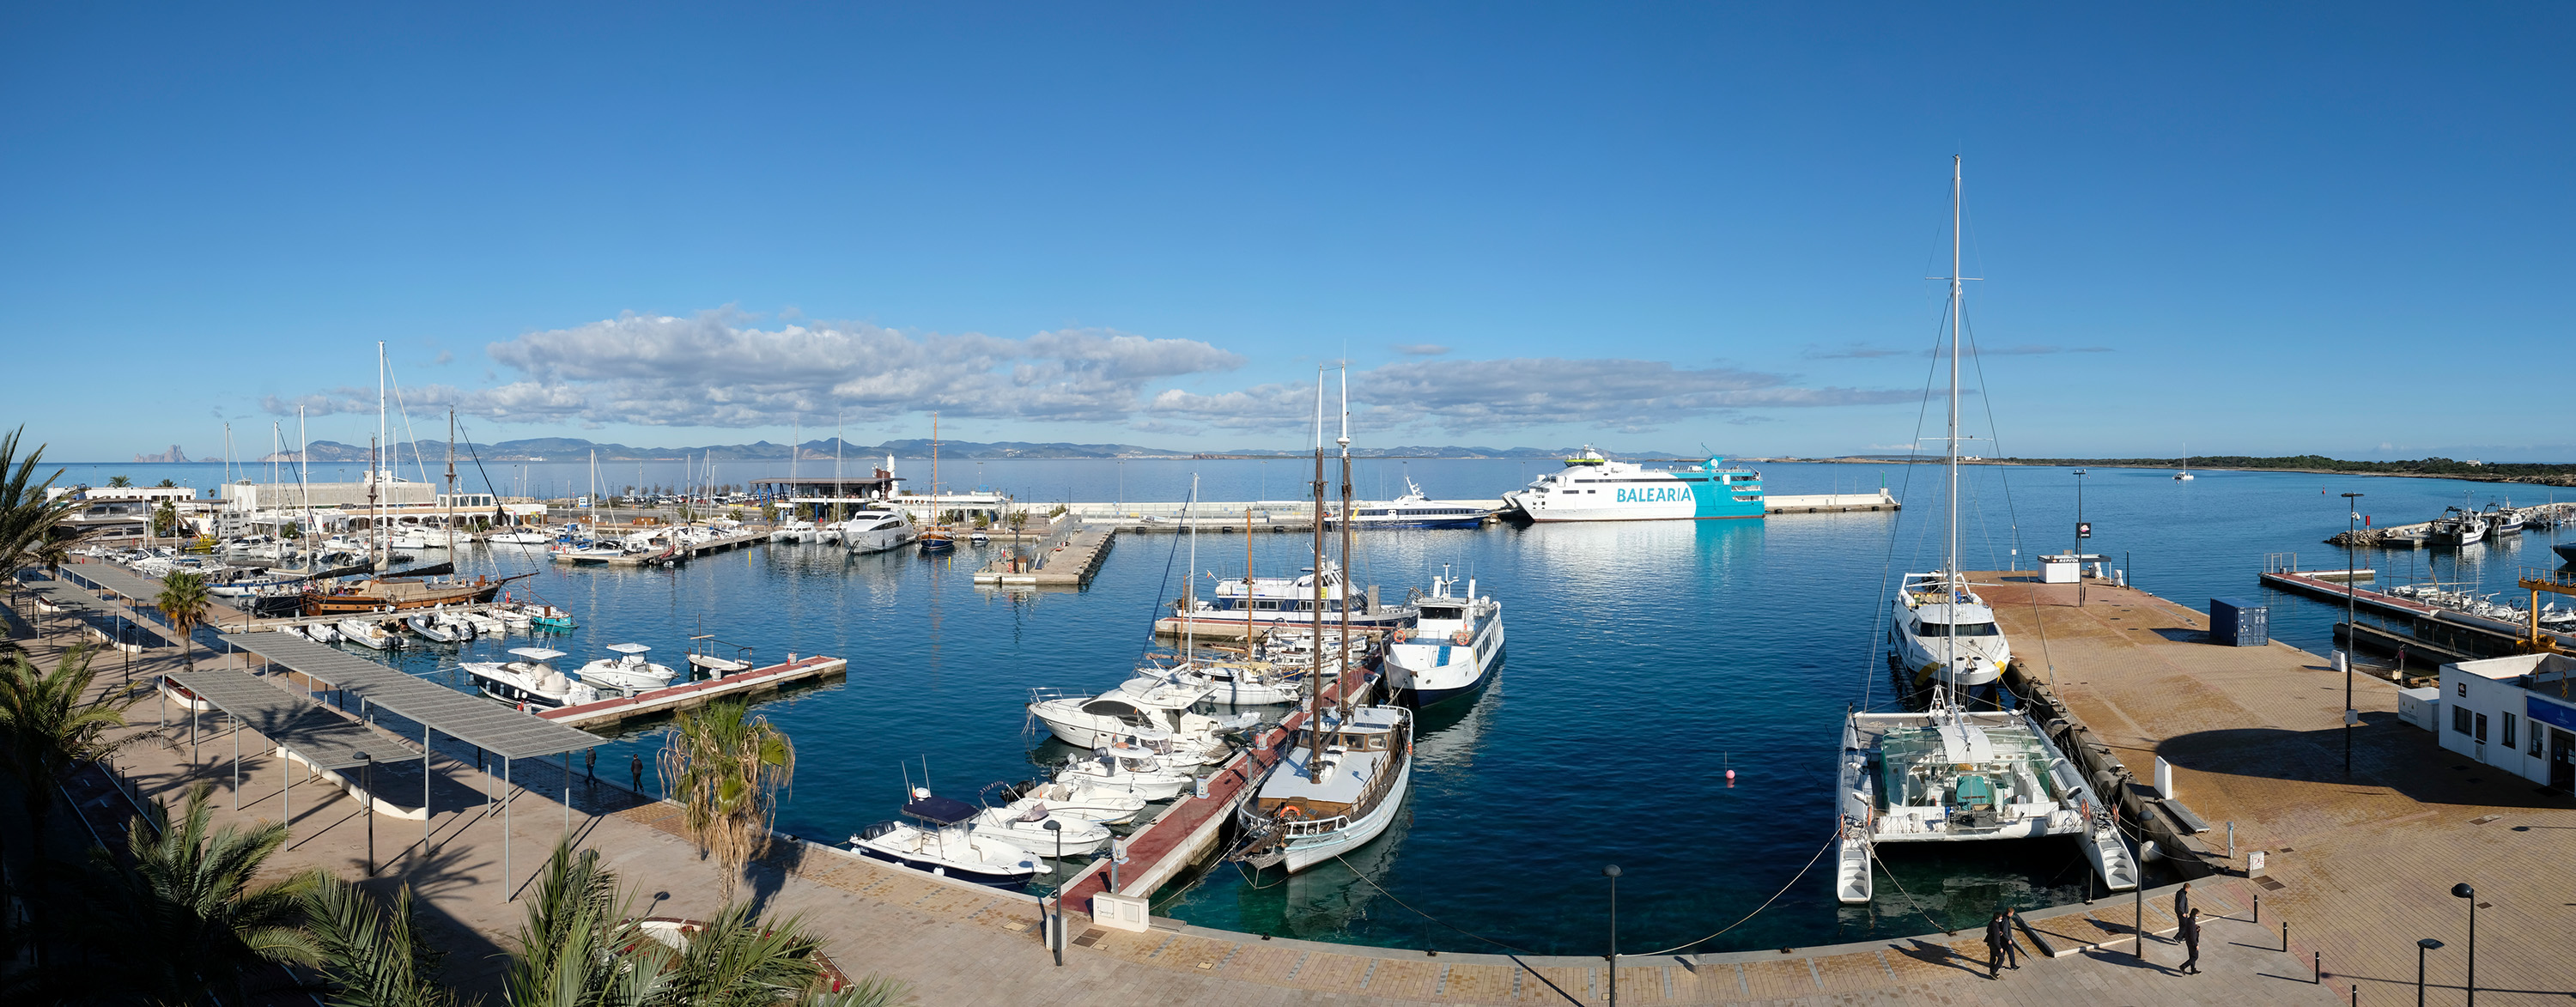 Die Verwaltung der Liegeplätze und des Geländes im westlichen Hafenbecken des Hafens von La Savina wird ausgeschrieben, was eine Neuordnung des Raumes einschließt